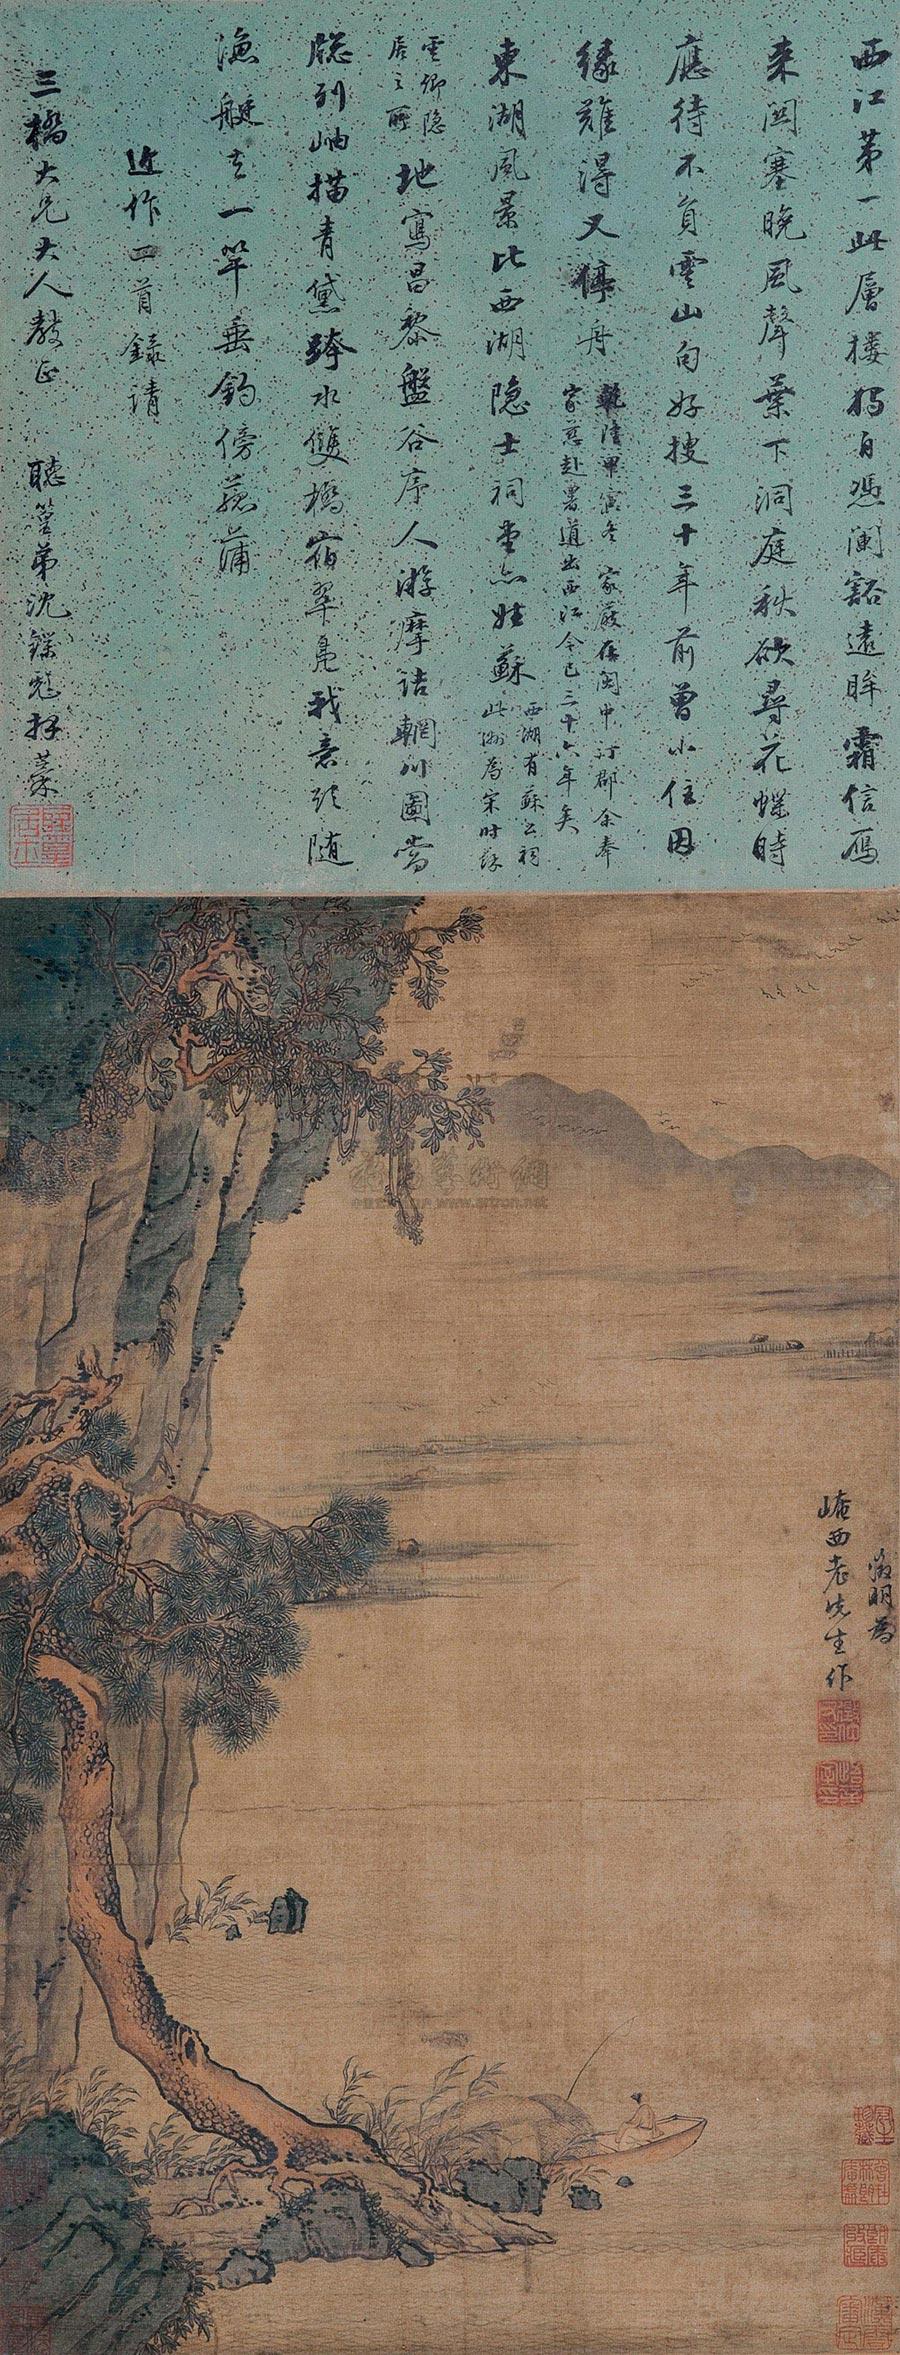 1854 西江渔隐图 立轴 设色绢本